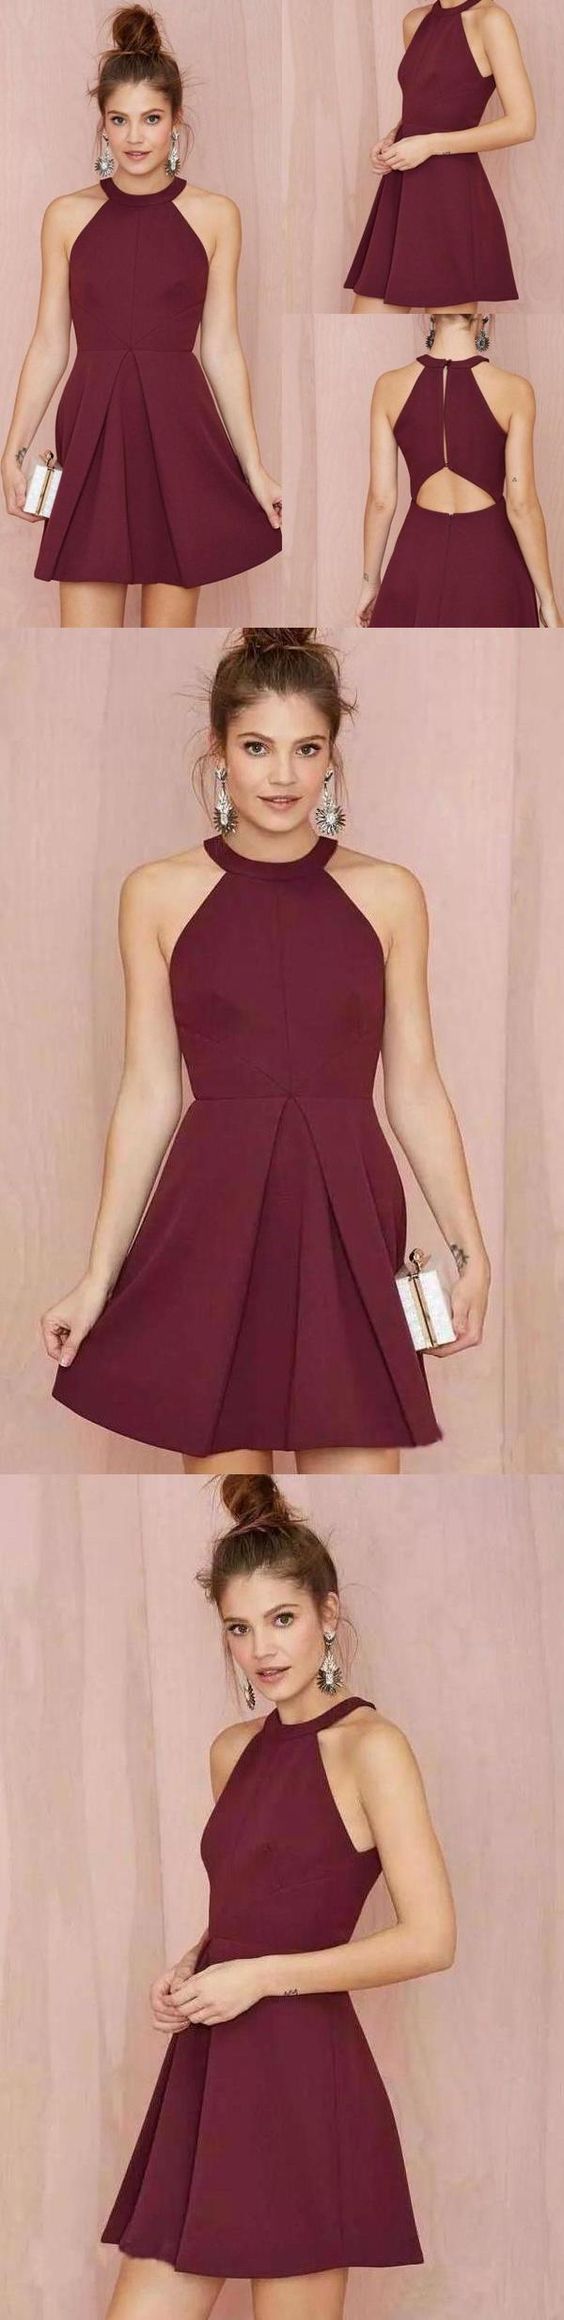 Cheap A Line Burgundy Short Dress Satin Knee Length Sleeveless Homecoming Dress  cg10315